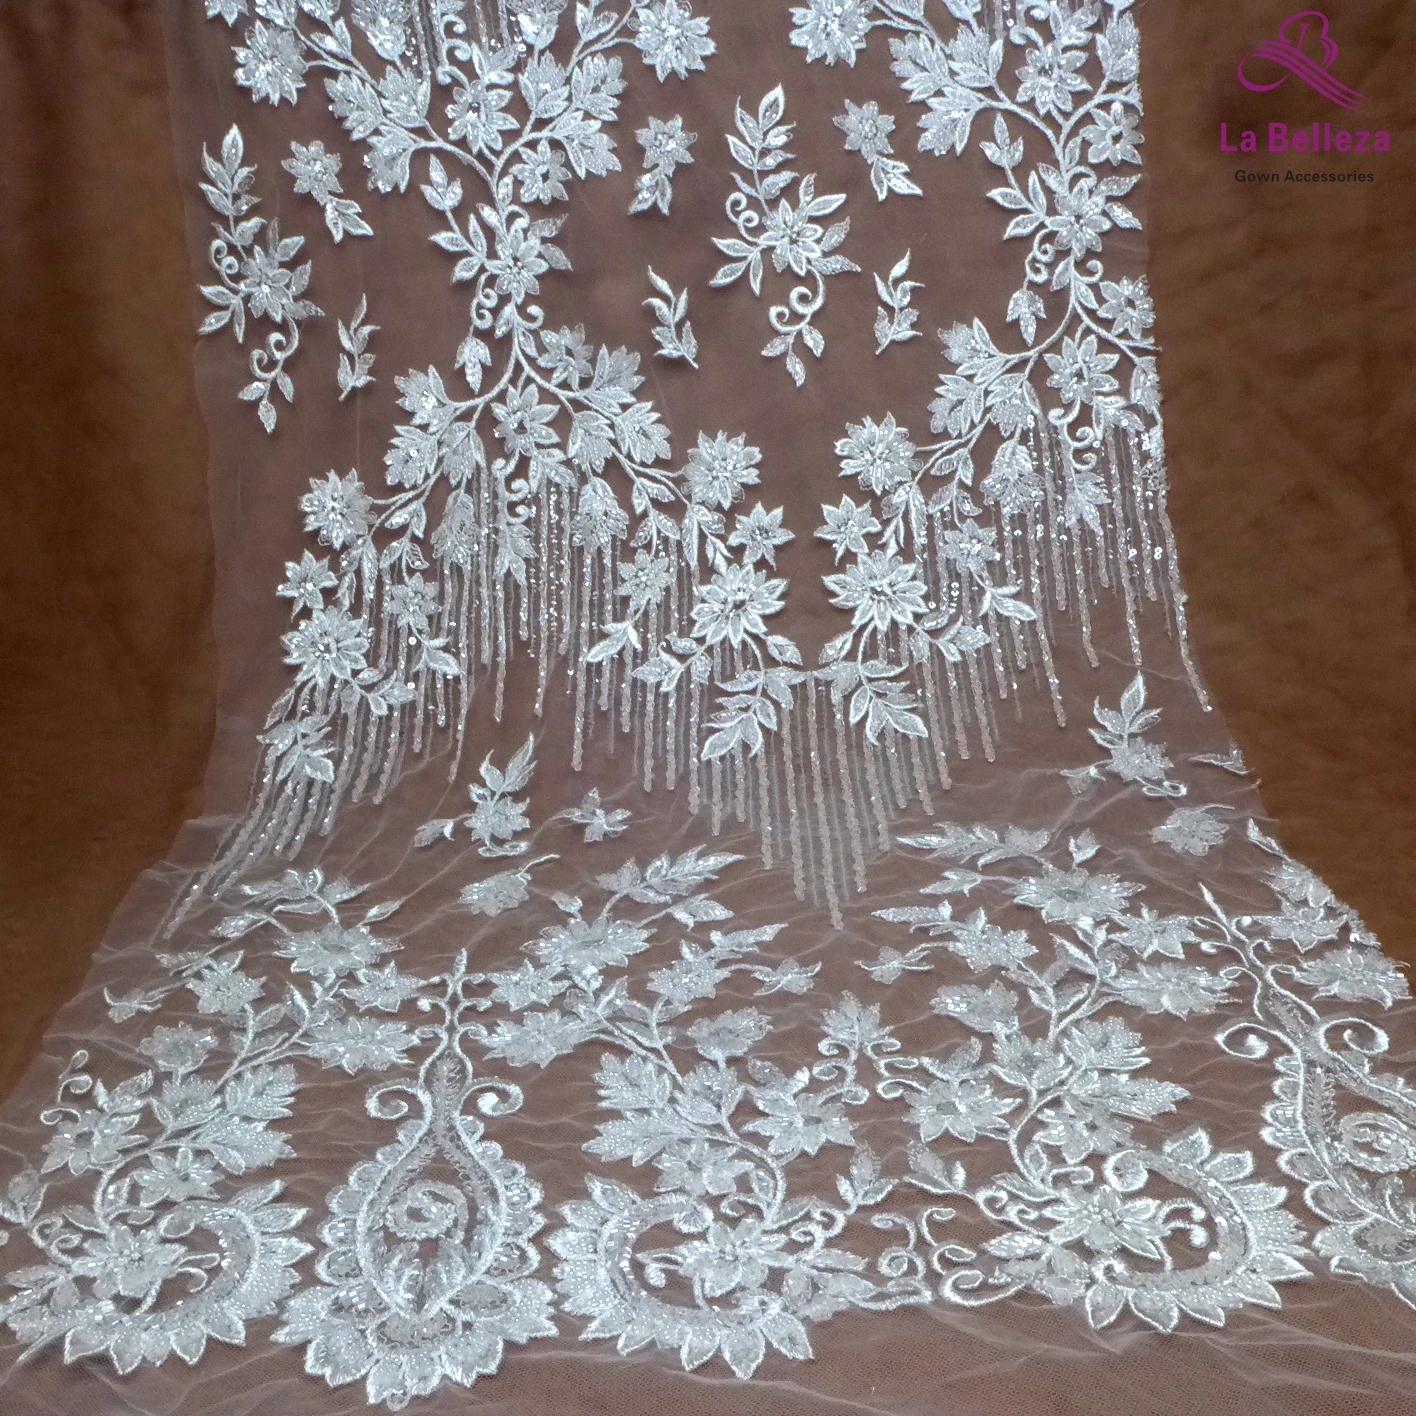 

La Belleza 2021 New fashion bridal lace fabric,ivory lace fabric,off white beading wedding dress lace fabric 51'' width 1 yard